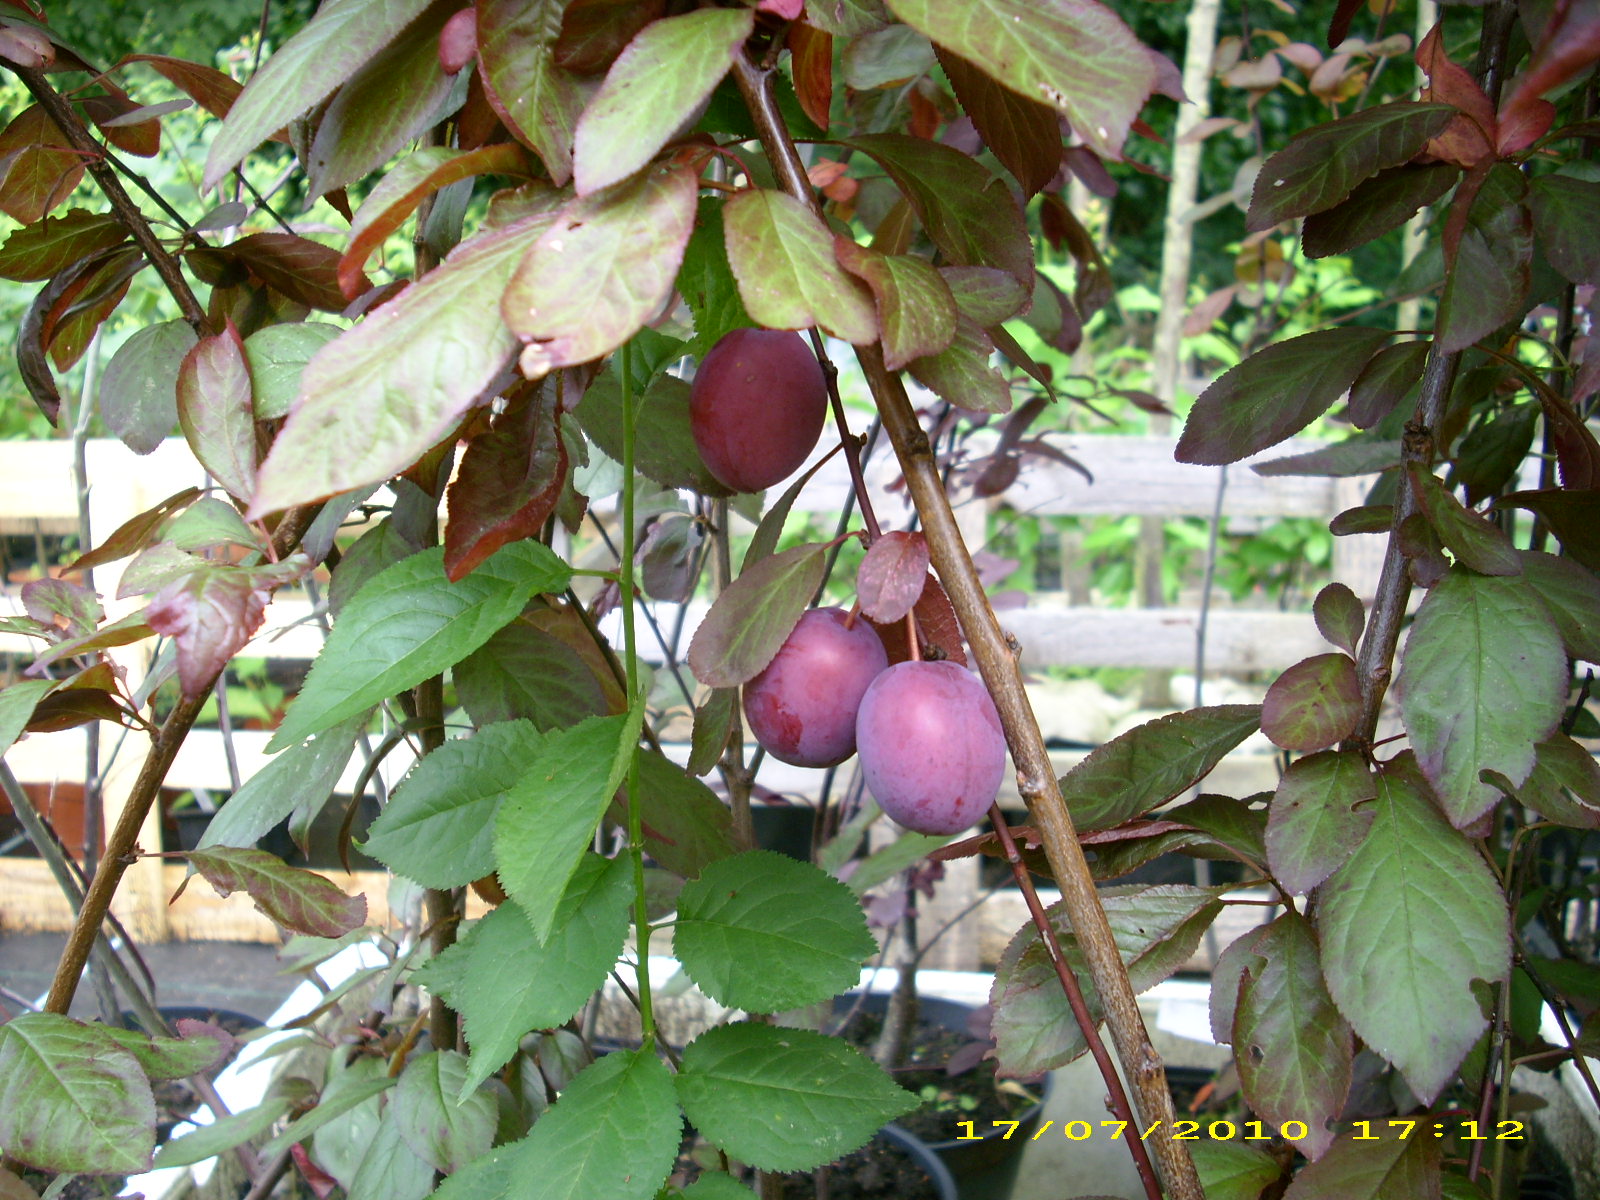 Wildobstschnecke - Prunus Hollywood cerasifera / Blutpflaume